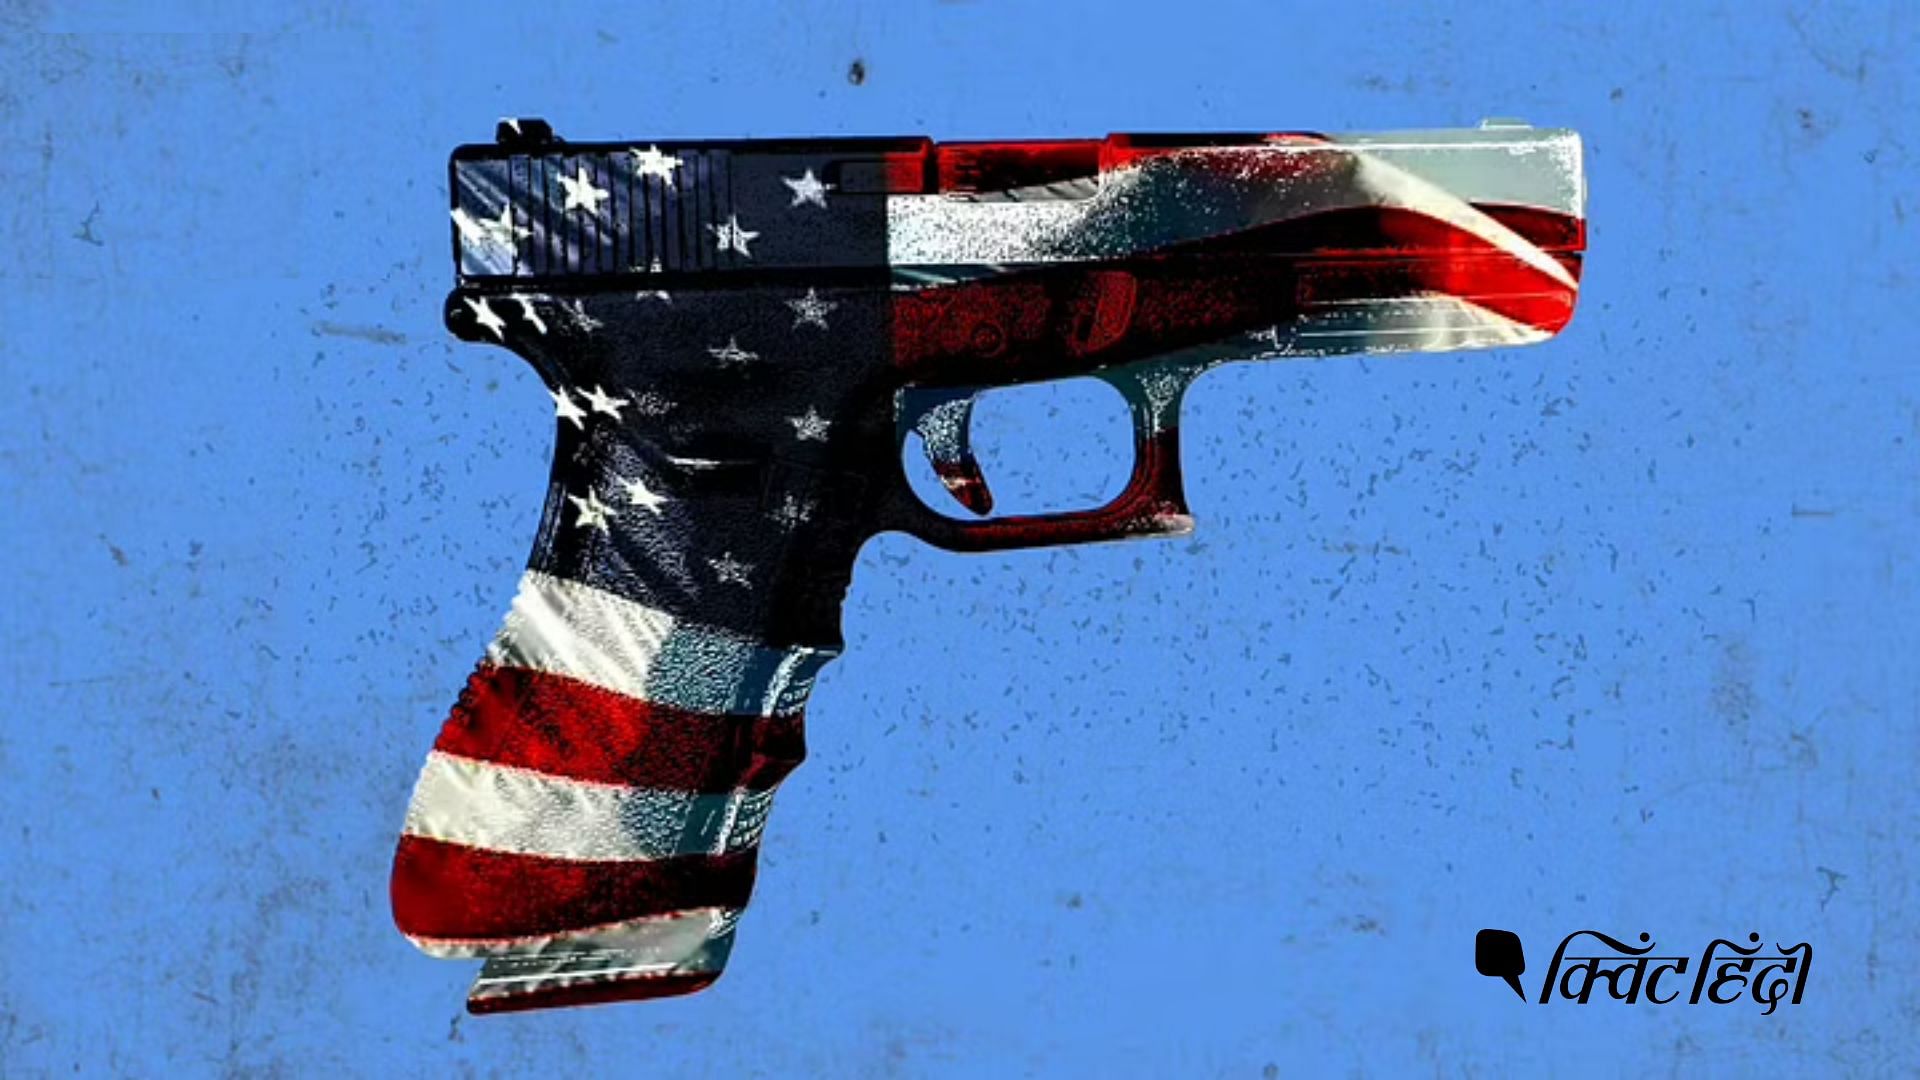 <div class="paragraphs"><p>America Gun Culture: अमेरिका में बंदूक की महामारी को चाहिए थी सर्जरी, मिली नाकाफी 'टिकिया'?</p></div>